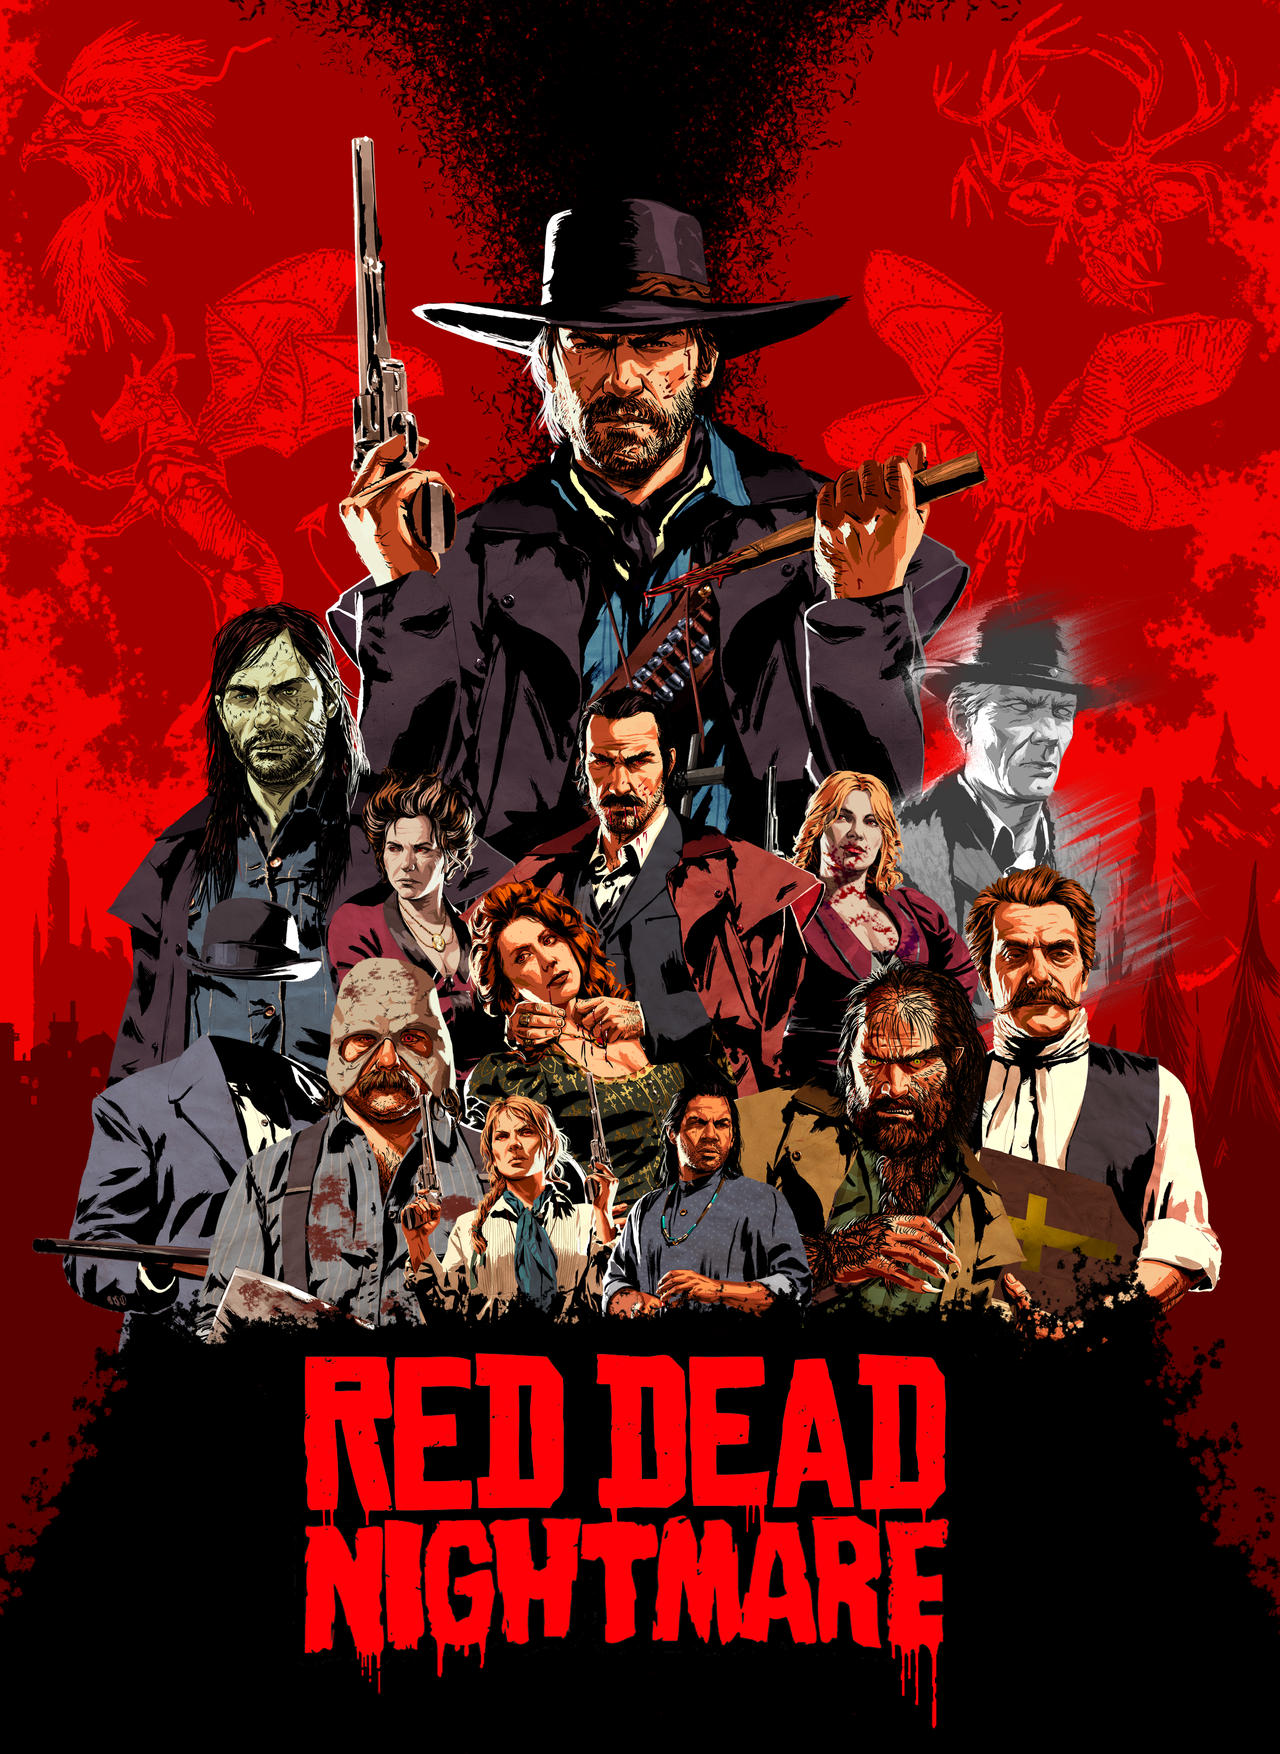 Skråstreg Samarbejdsvillig Ring tilbage Red Dead Redemption Fan Concept DLC by LandonMagicDragon on DeviantArt